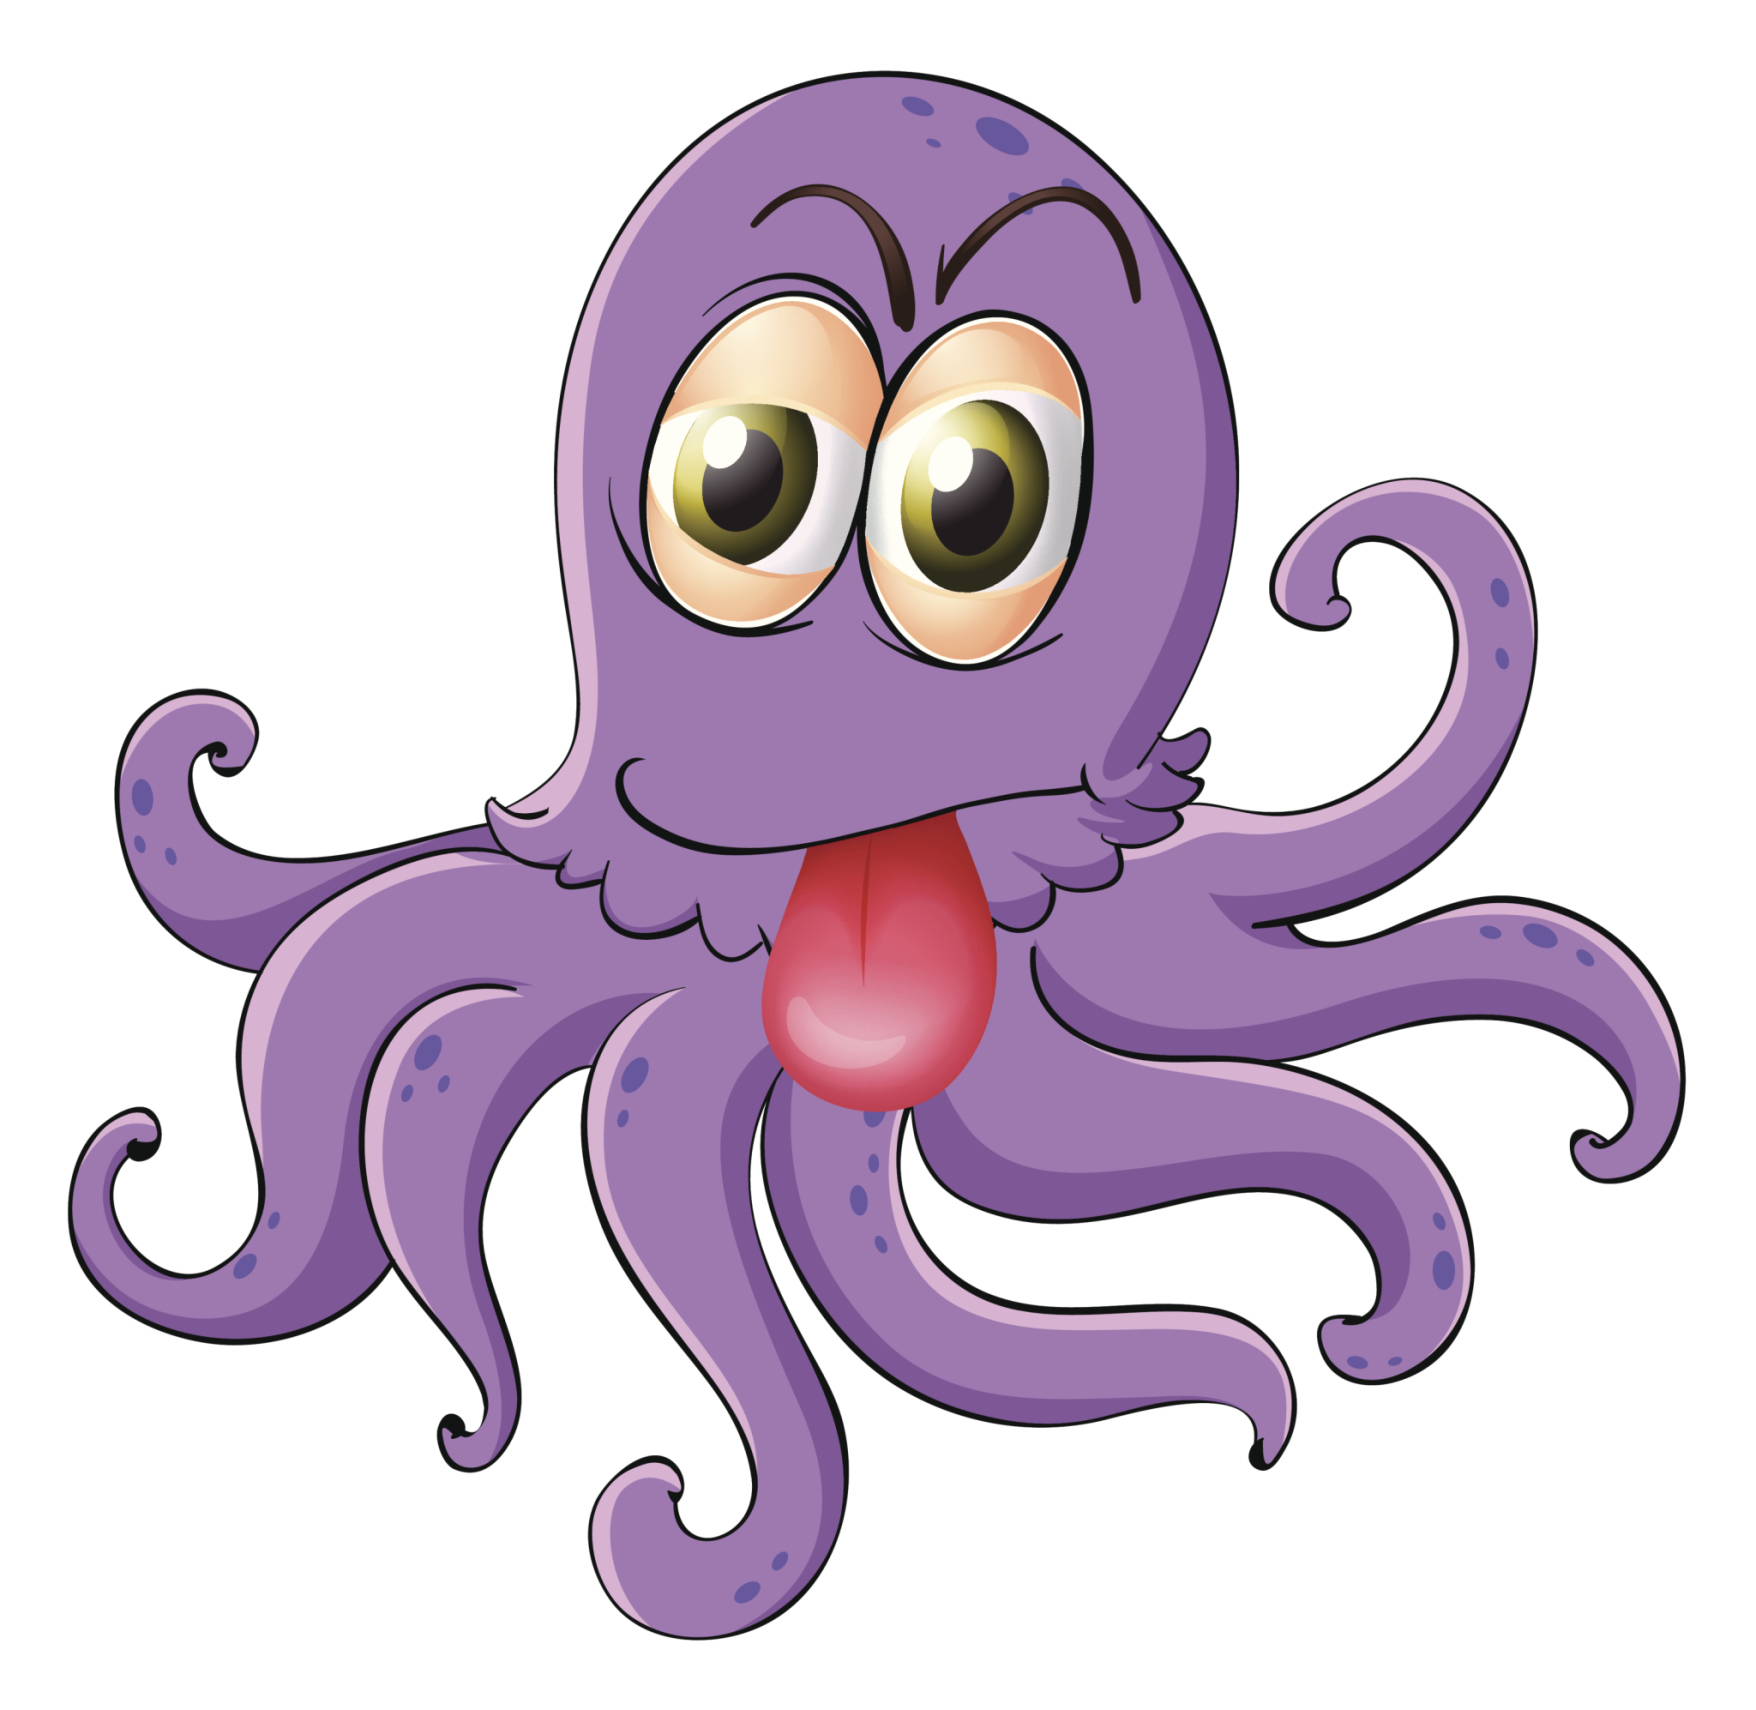 Podívejte se na chobotnici, která umí odšroubovat víko sklenice – zevnitř!